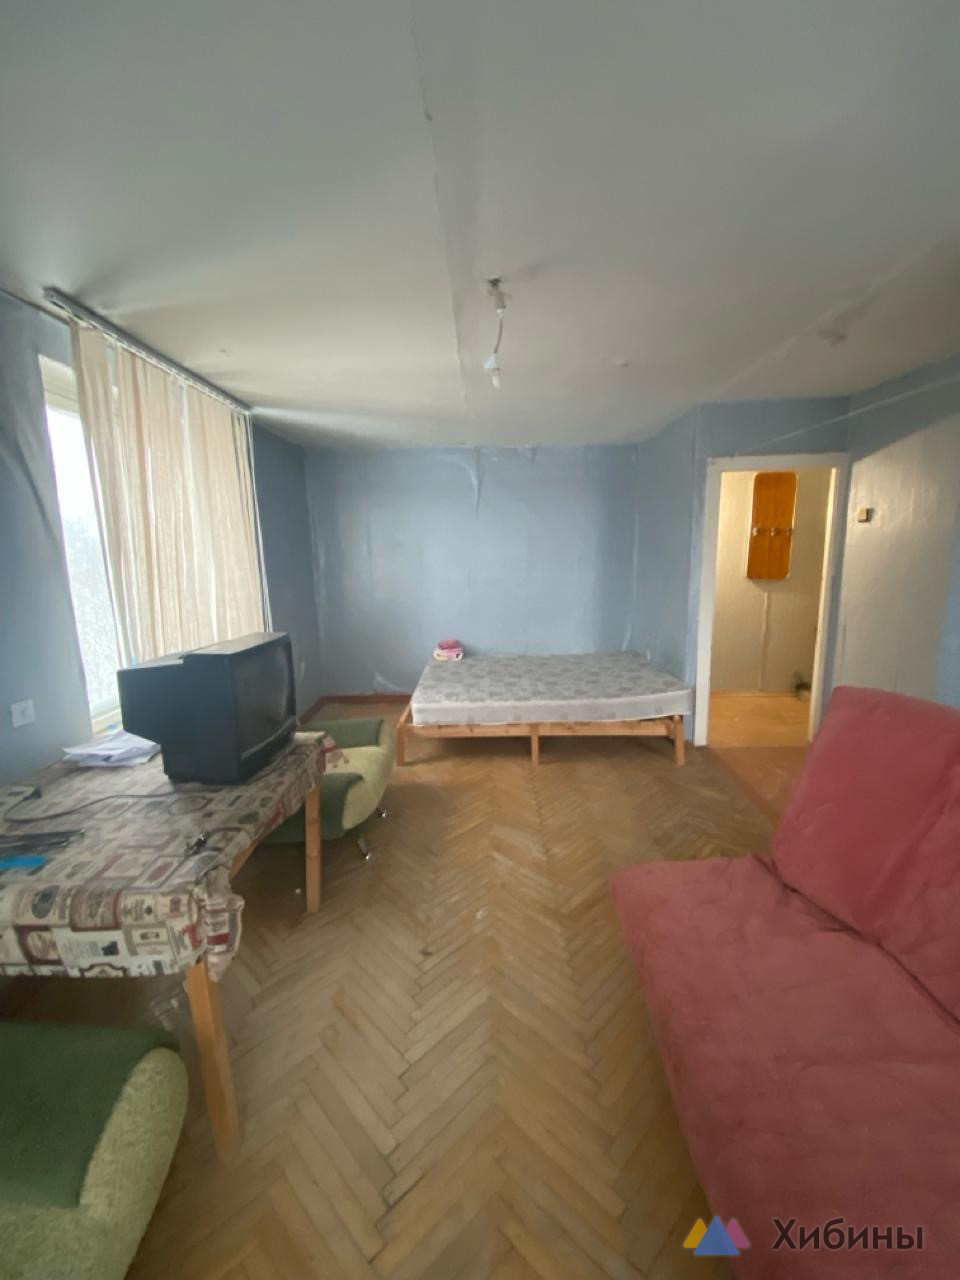 Сдам 1-комнатную квартиру на длительный срок, с балконом